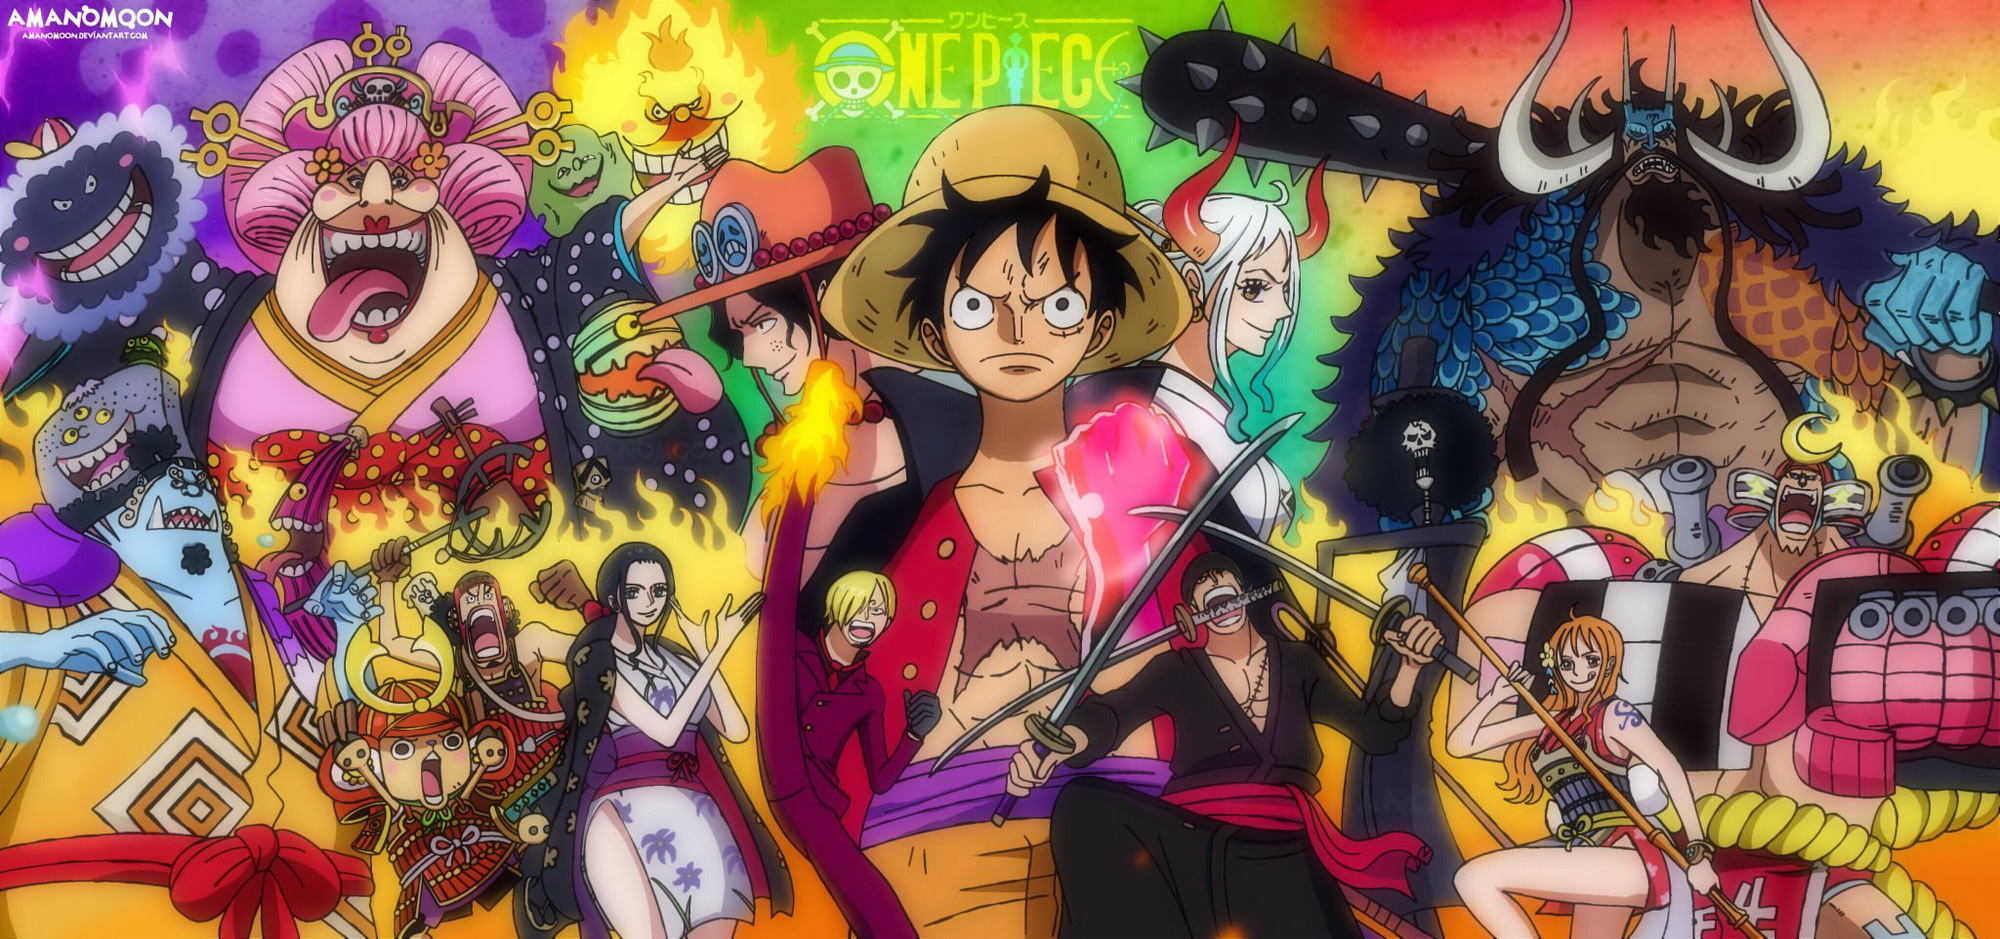 Bộ trang bìa One Piece tập 100 chứa đựng nhiều ý nghĩa và tình cảm sâu sắc của các nhân vật trong truyện. Những chi tiết tinh tế và độc đáo sẽ khiến bạn không thể bỏ qua. Hãy cùng khám phá chỗ ẩn nấp của mỗi nhân vật trong truyện.